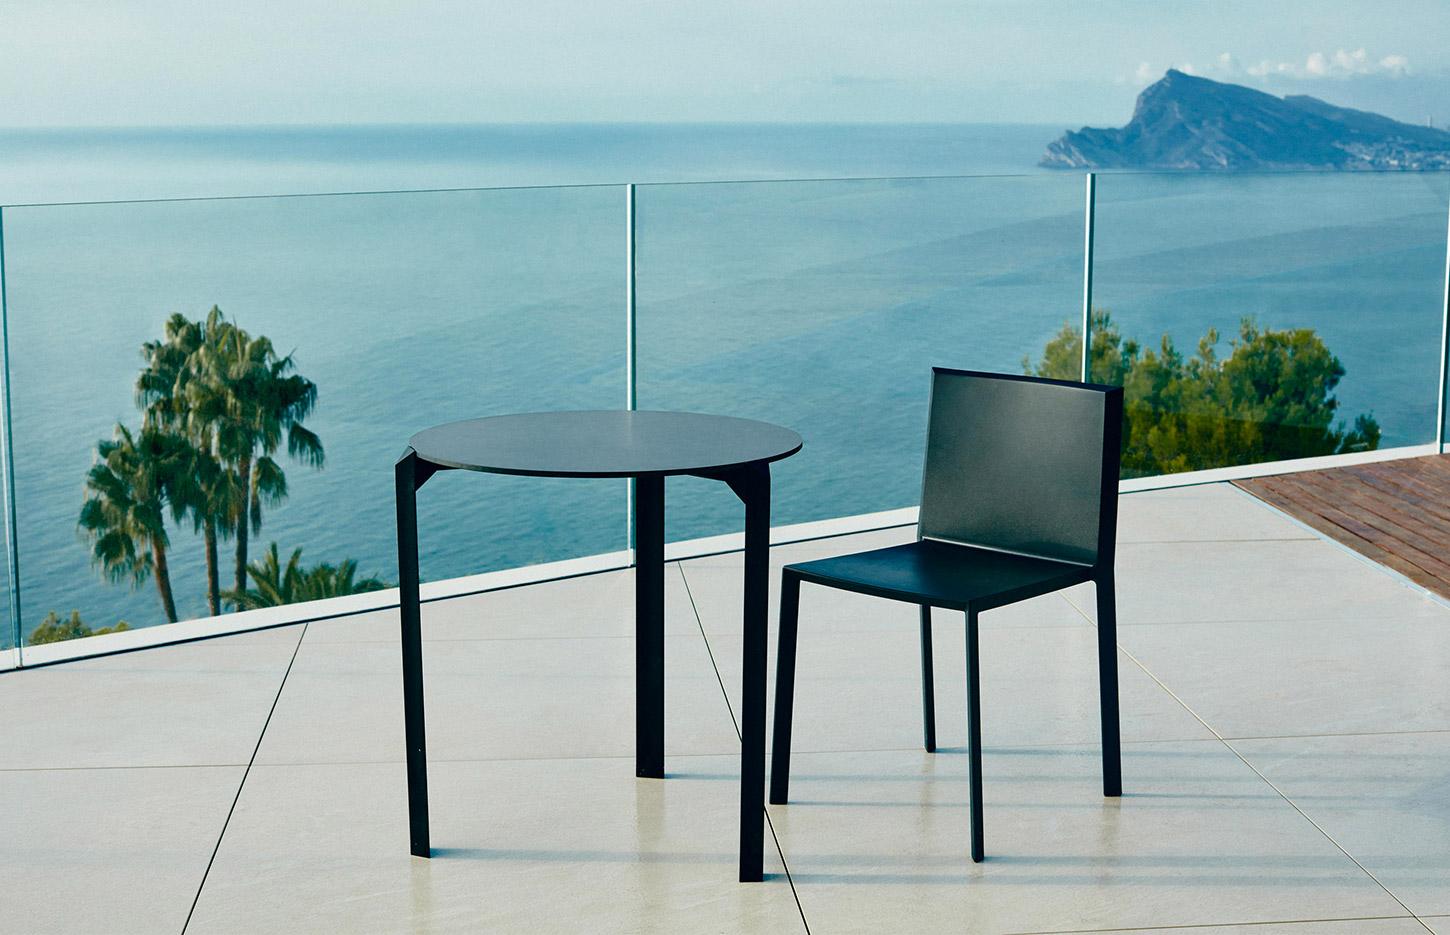 Table et chaise d\'extérieur rondes, carrées ou rectangulaires et empilables, gamme Kari - France Bureau